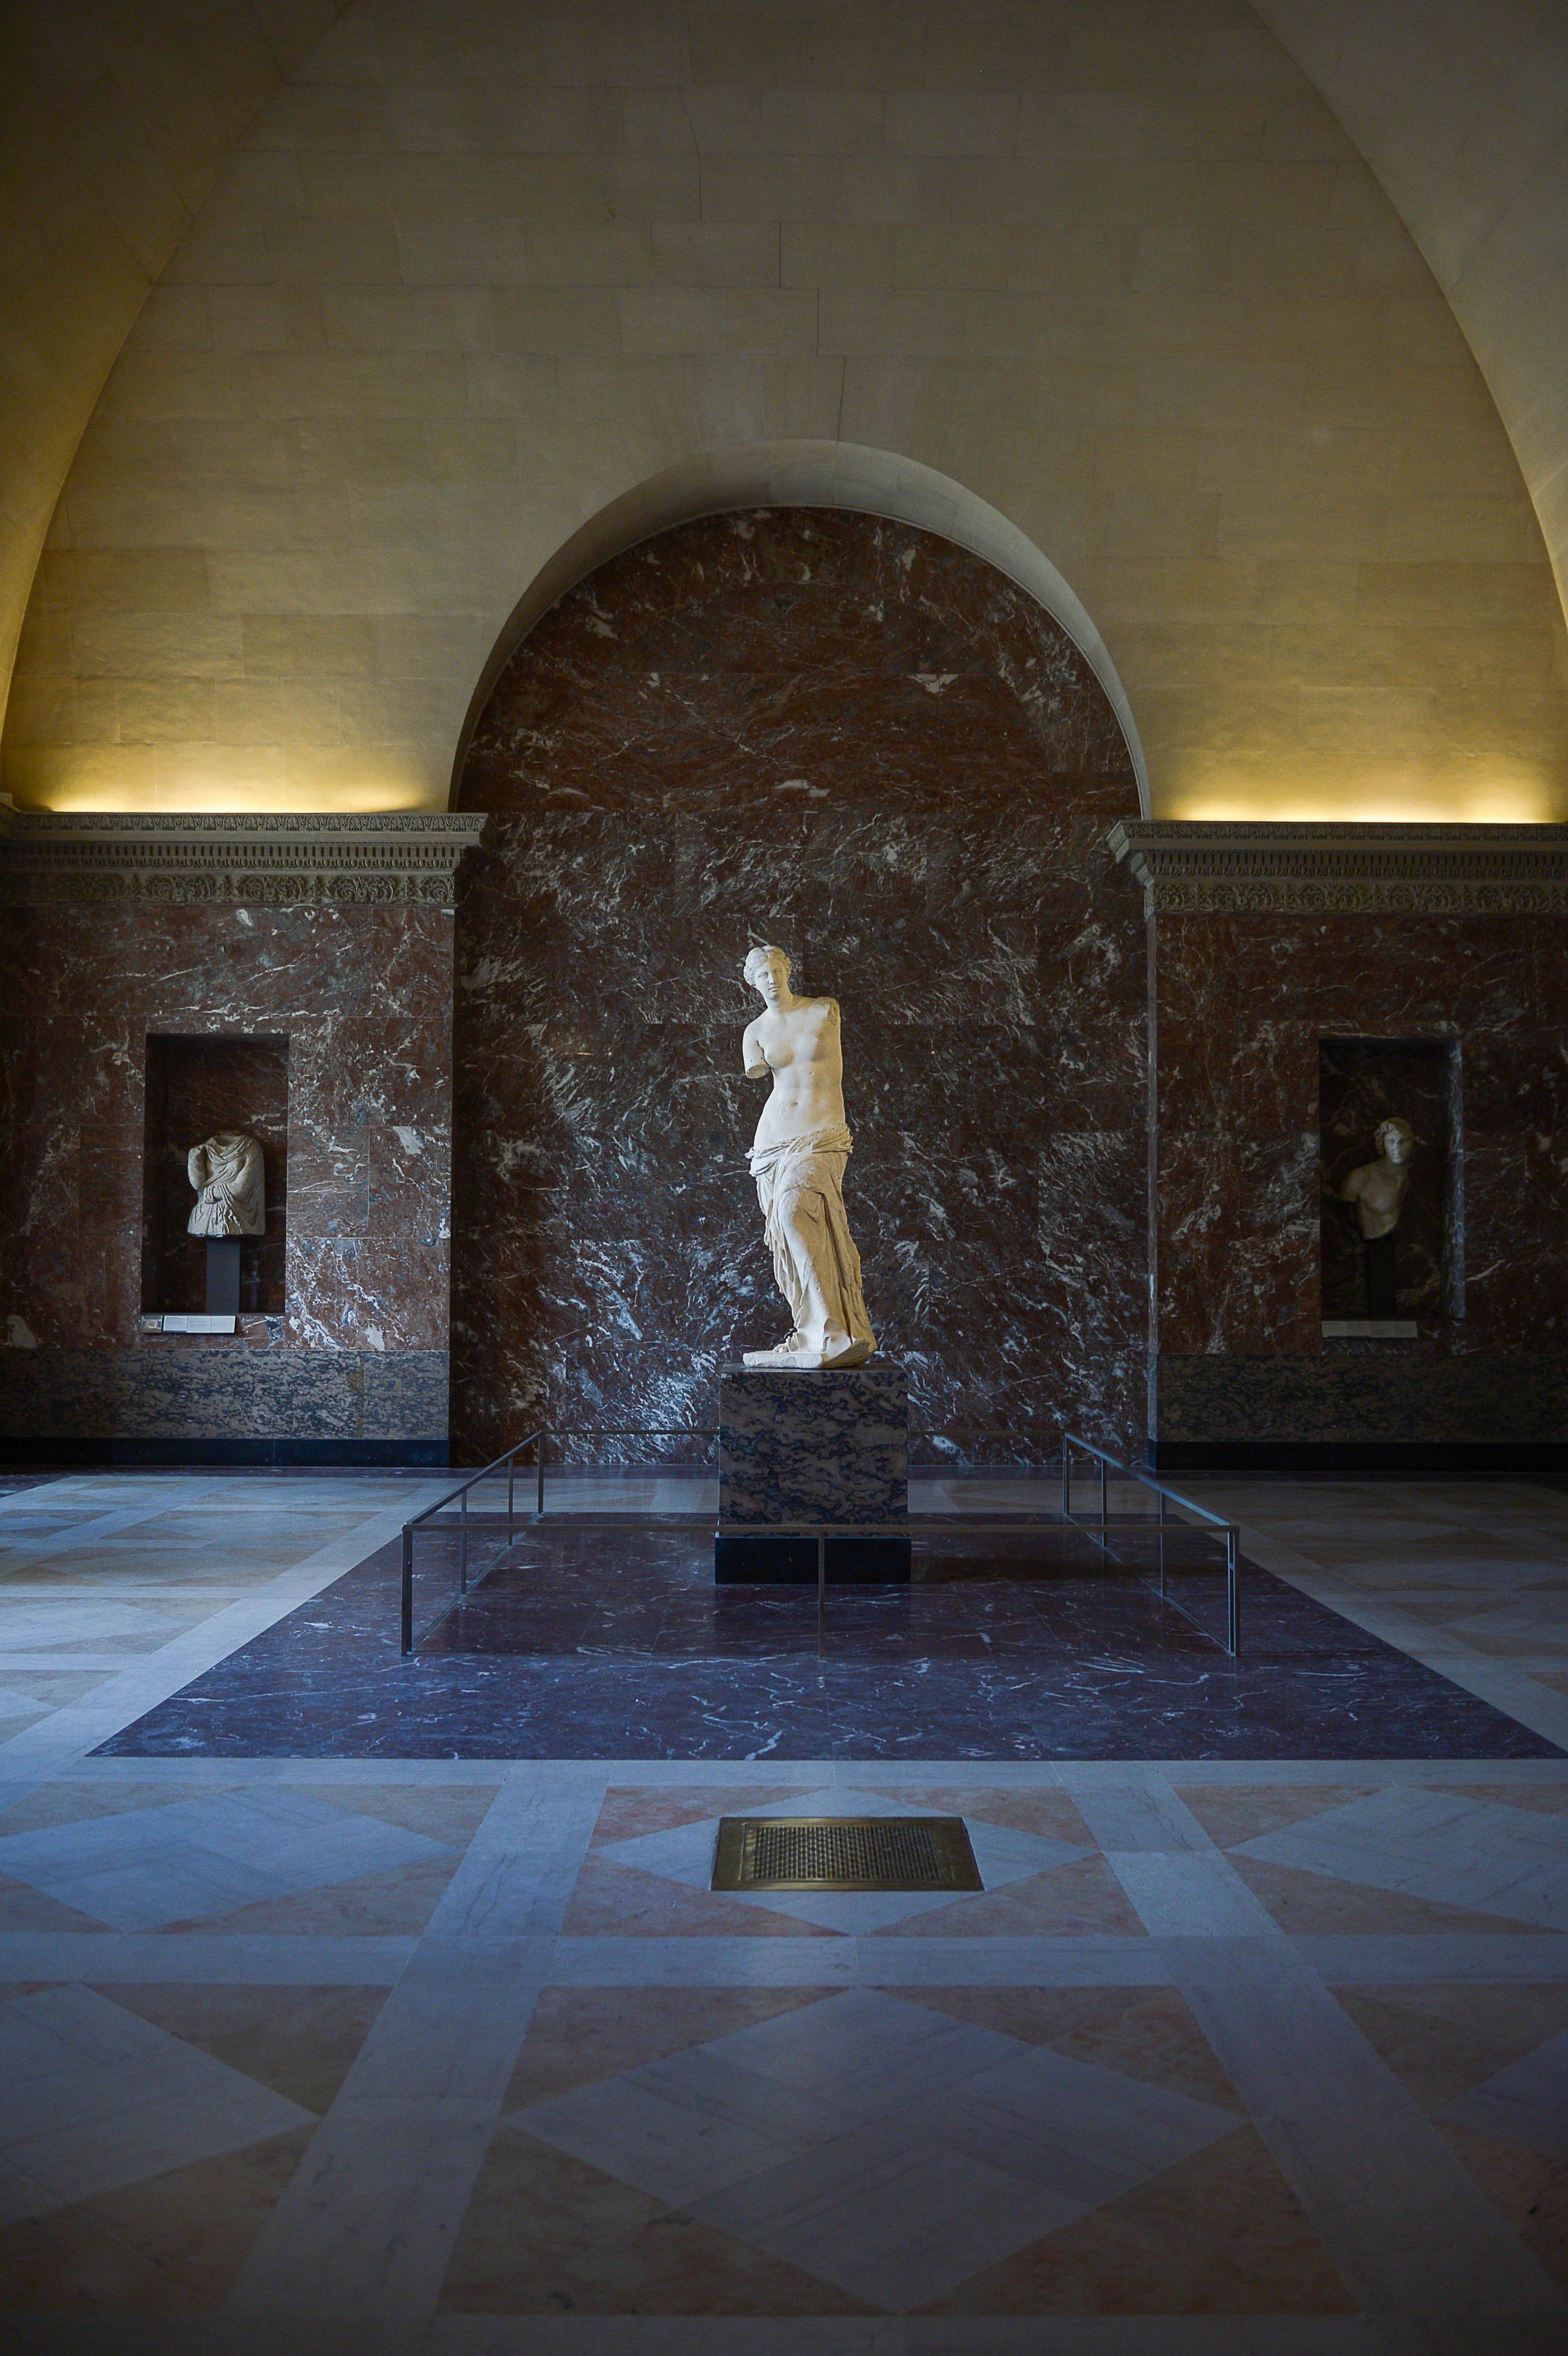 这是7月6日在法国巴黎卢浮宫博物馆拍摄的雕塑《断臂维纳斯》